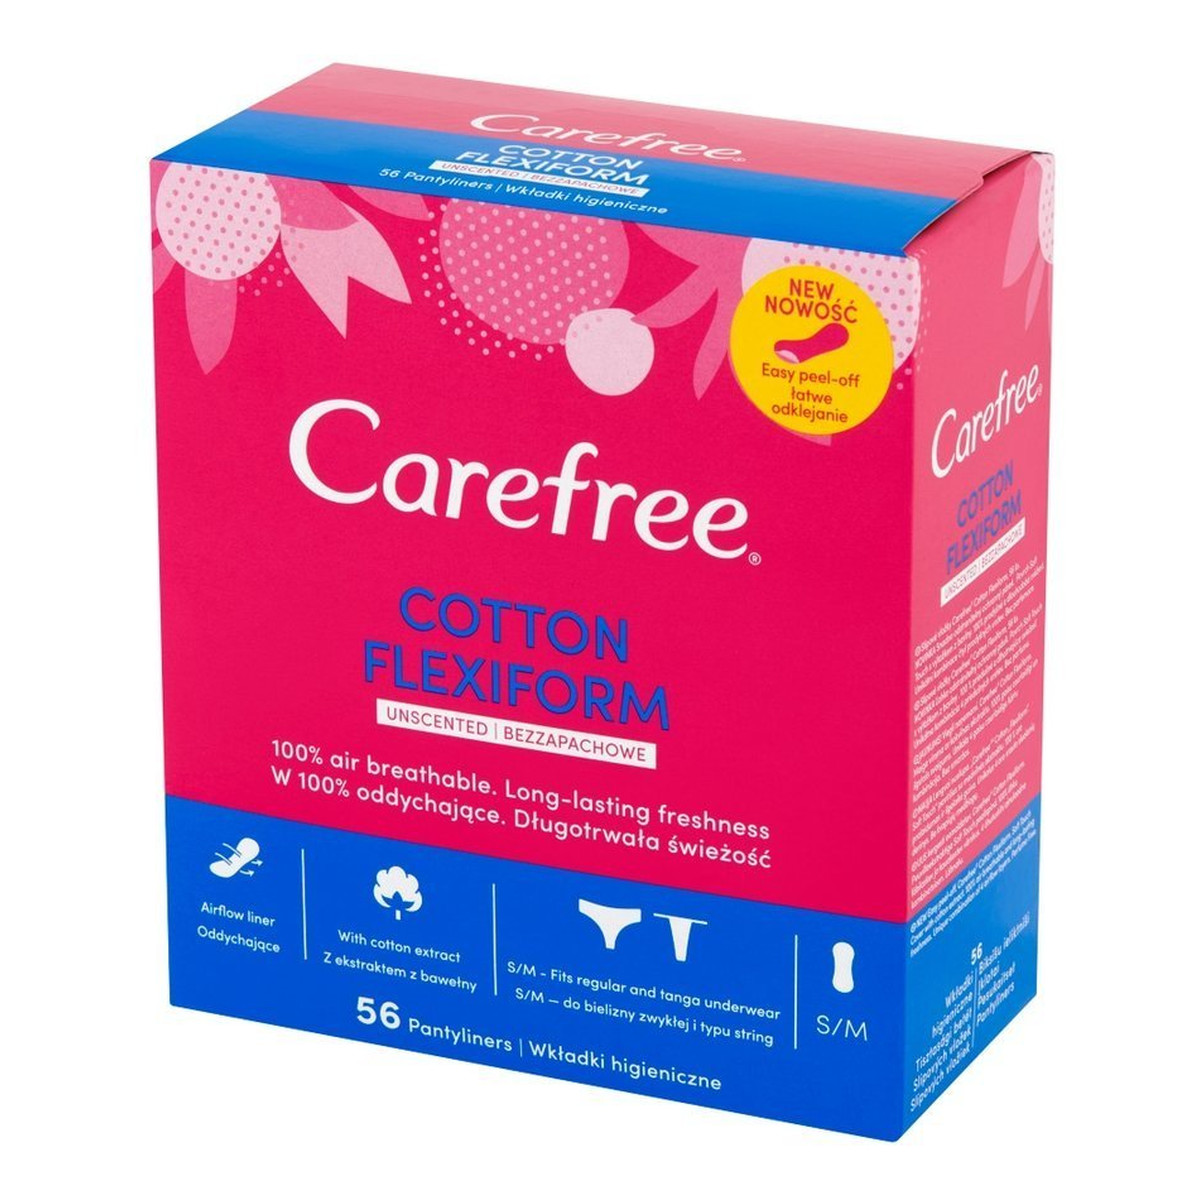 Carefree Cotton Flexiform Wkładki higieniczne 1op.-56szt